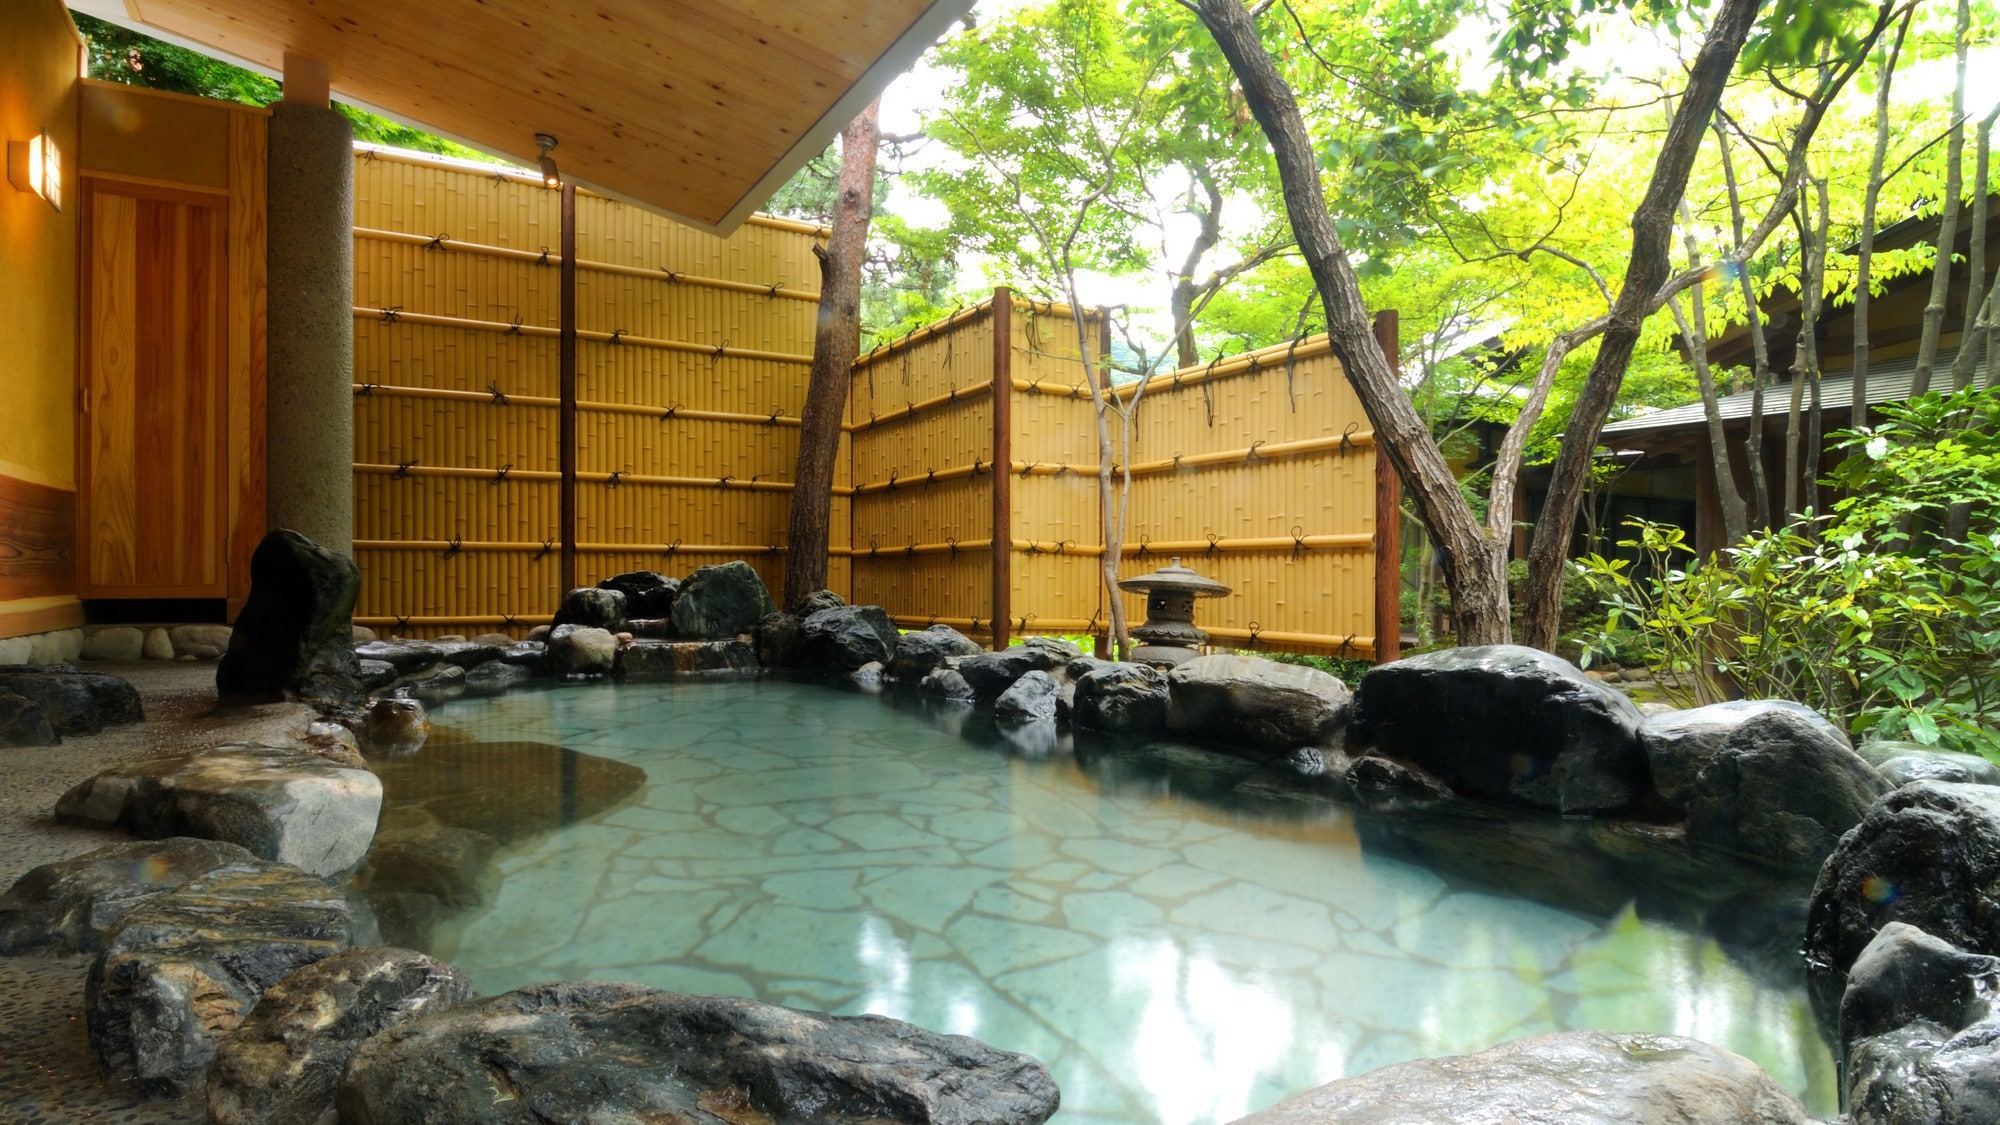 Open-air bath "Wabi-yu"